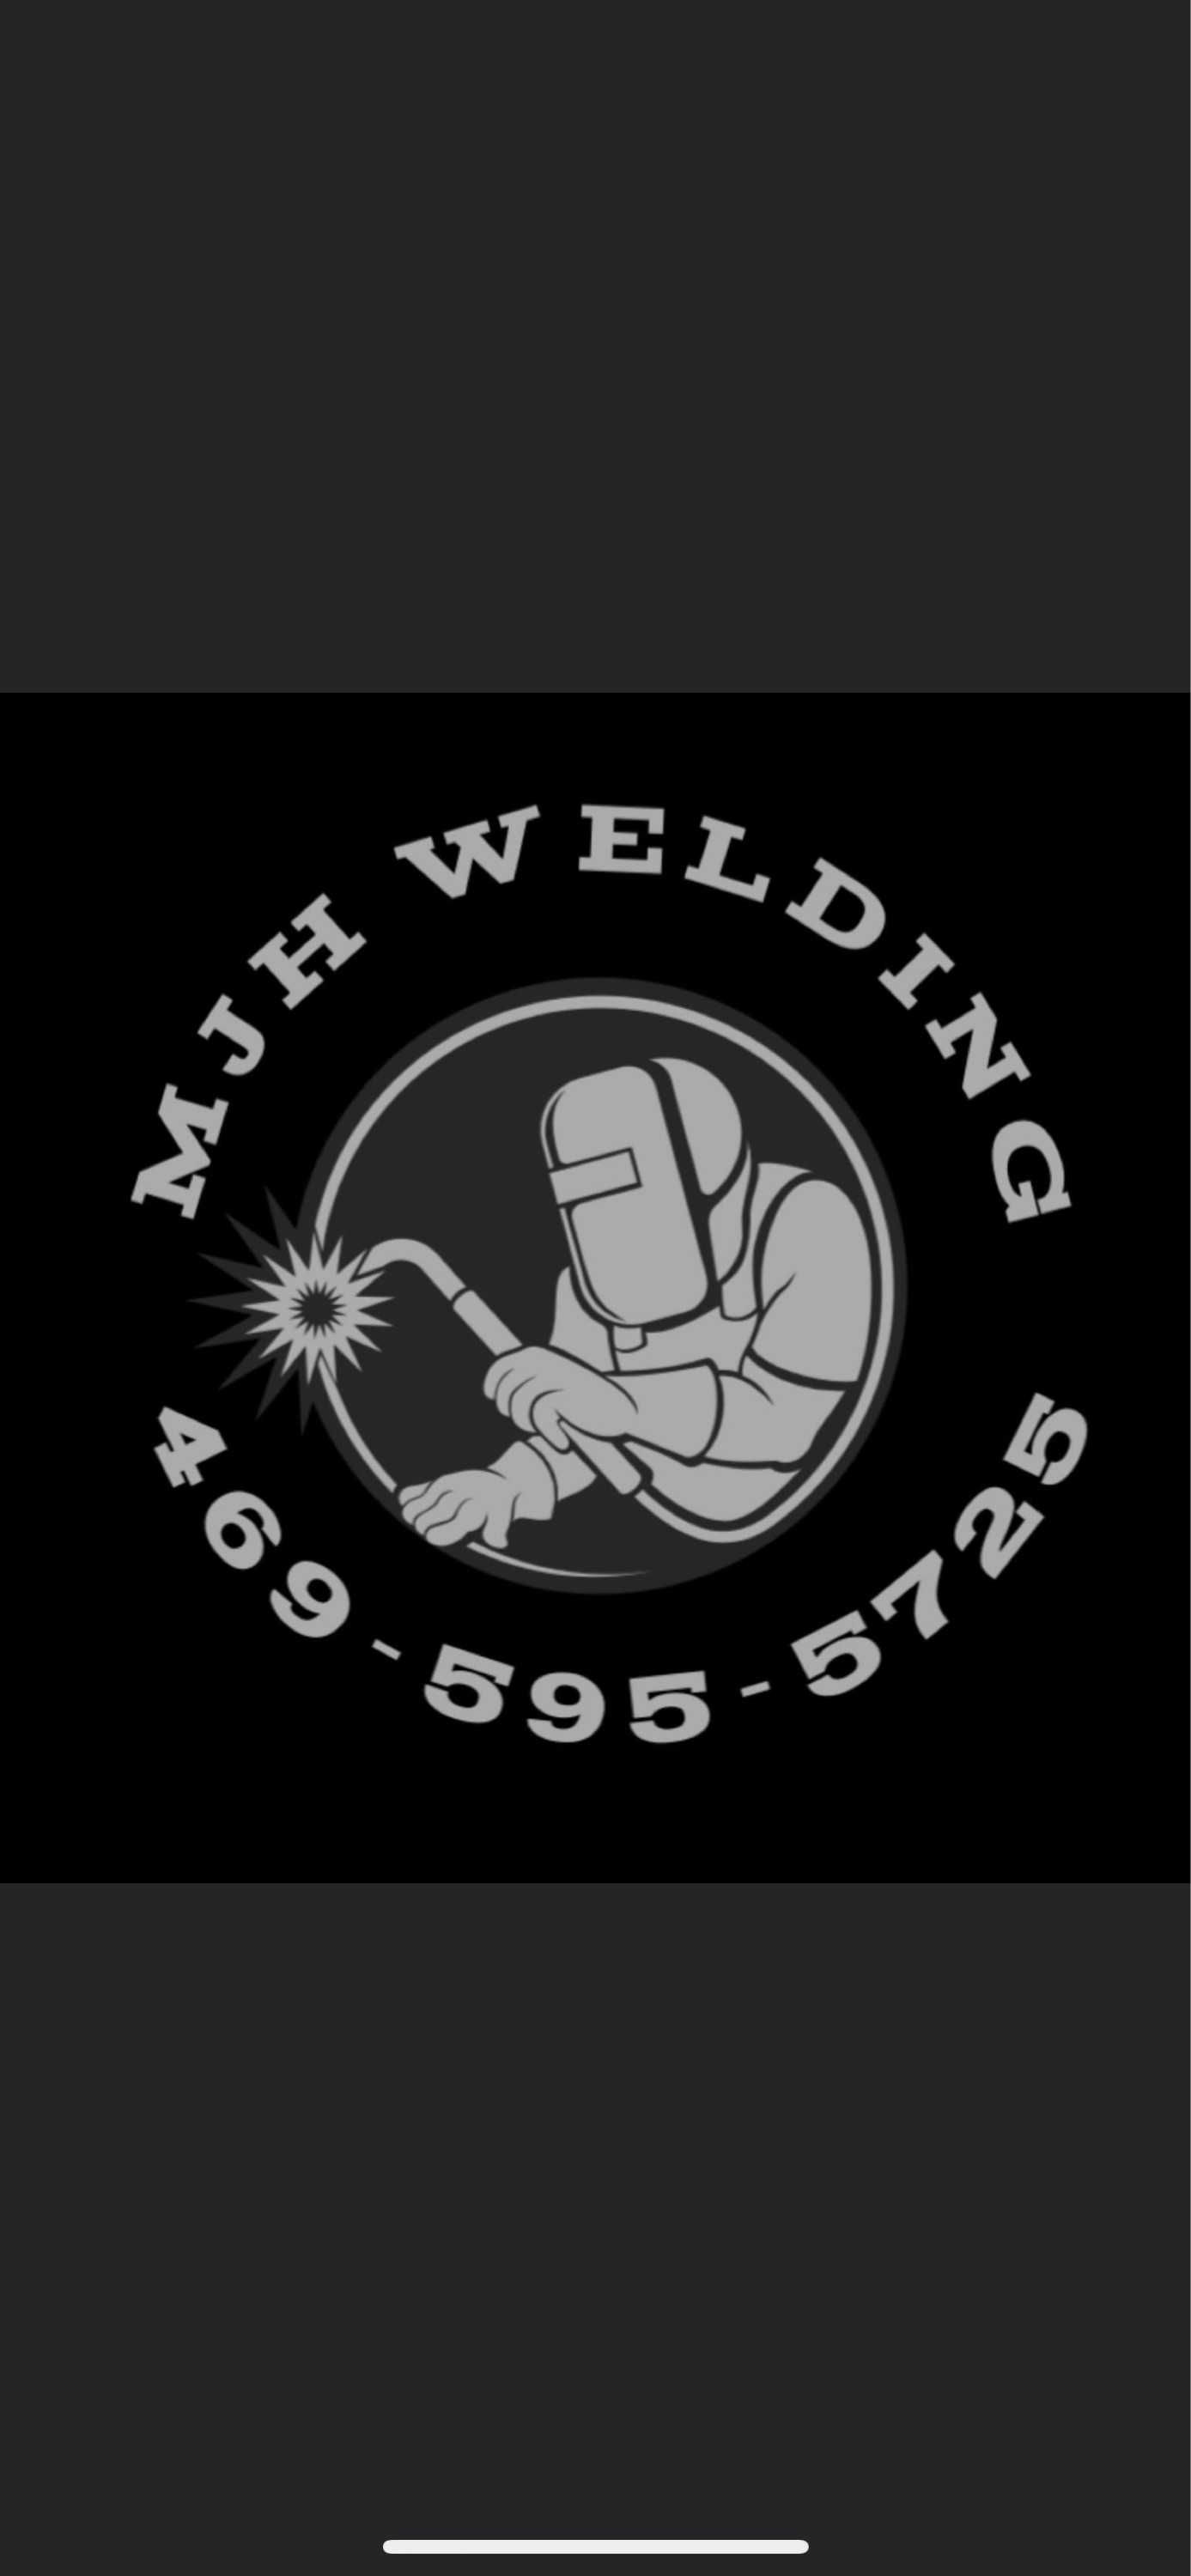 MJH Welding Logo